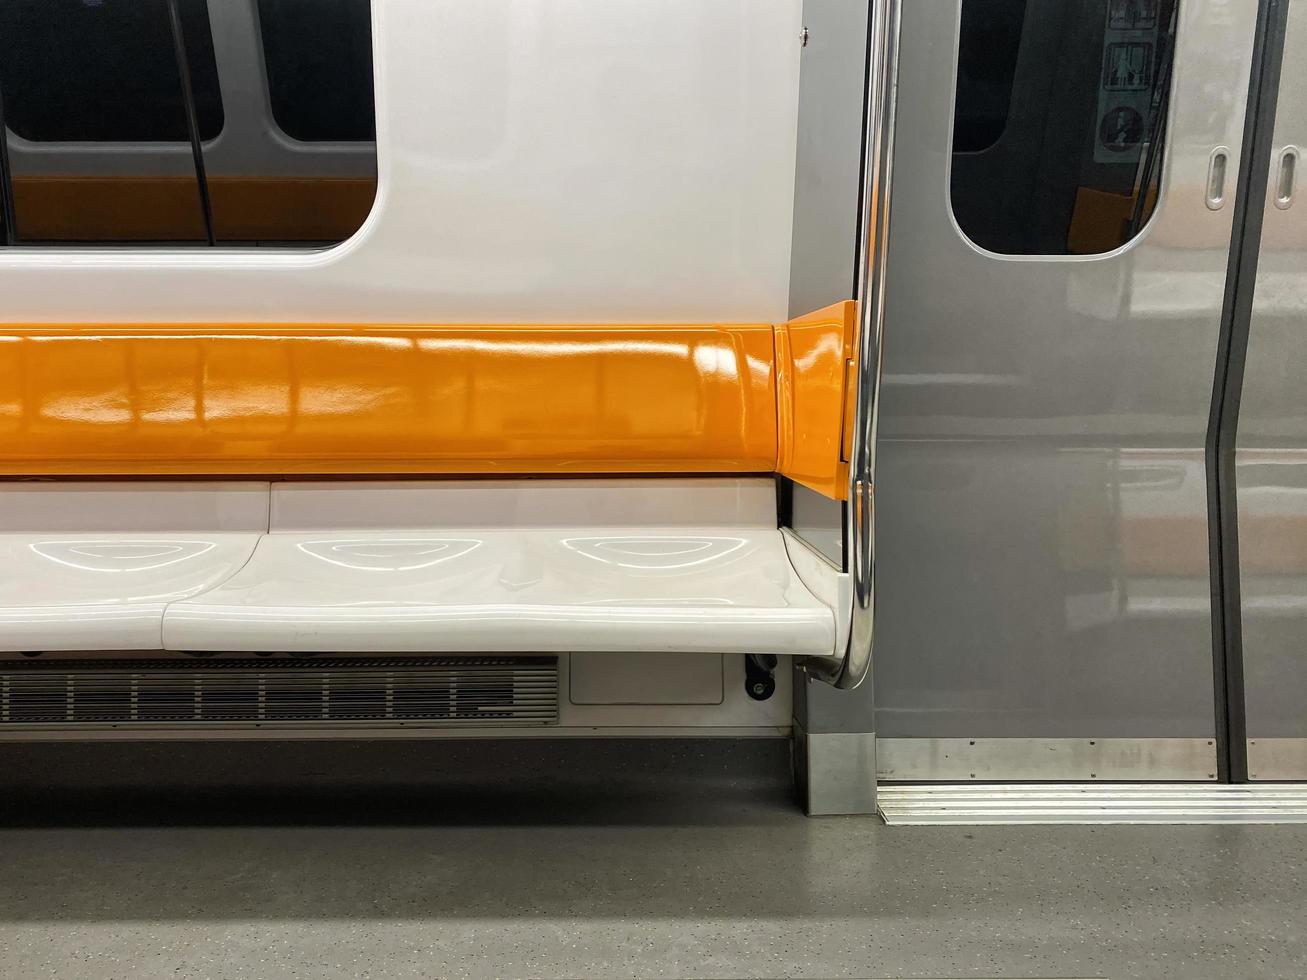 sedili della metropolitana arancioni e bianchi foto